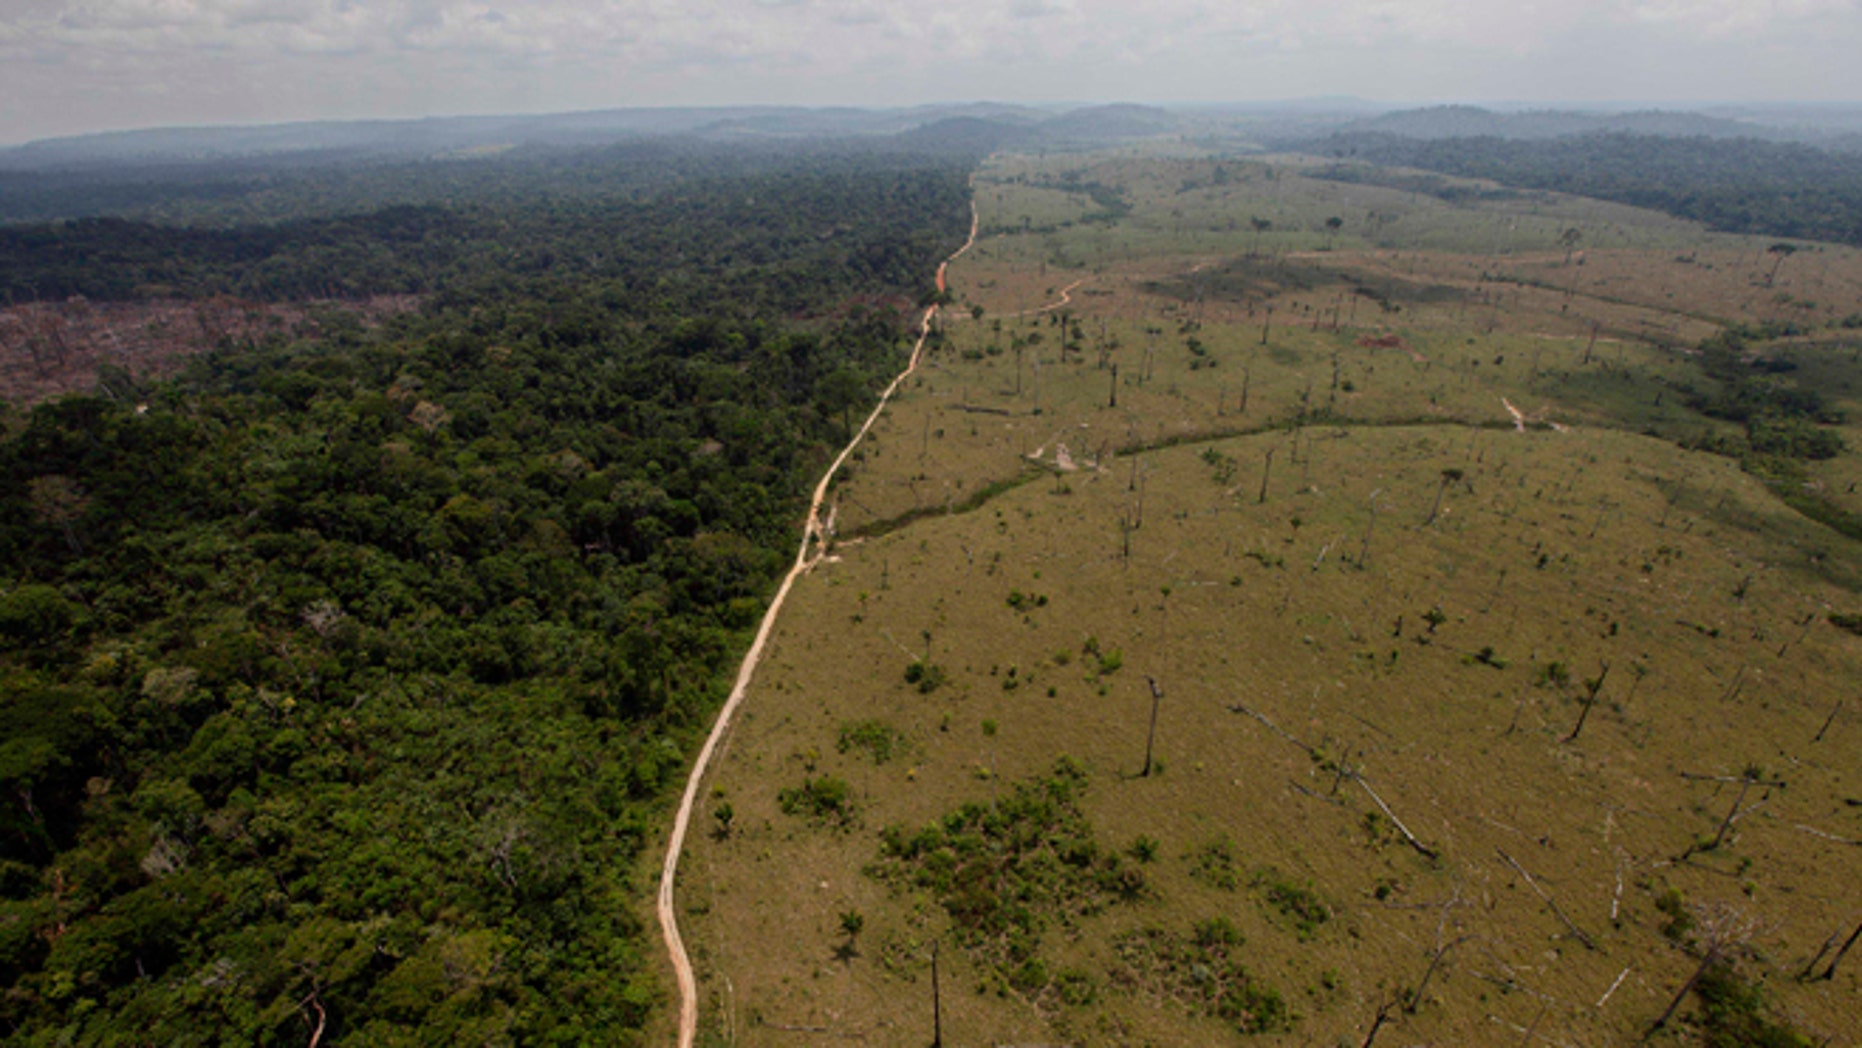 https://a57.foxnews.com/a57.foxnews.com/static.foxnews.com/foxnews.com/content/uploads/2018/09/640/320/1862/1048/Brazil-Deforestation_Grat.jpg?ve=1&tl=1?ve=1&tl=1